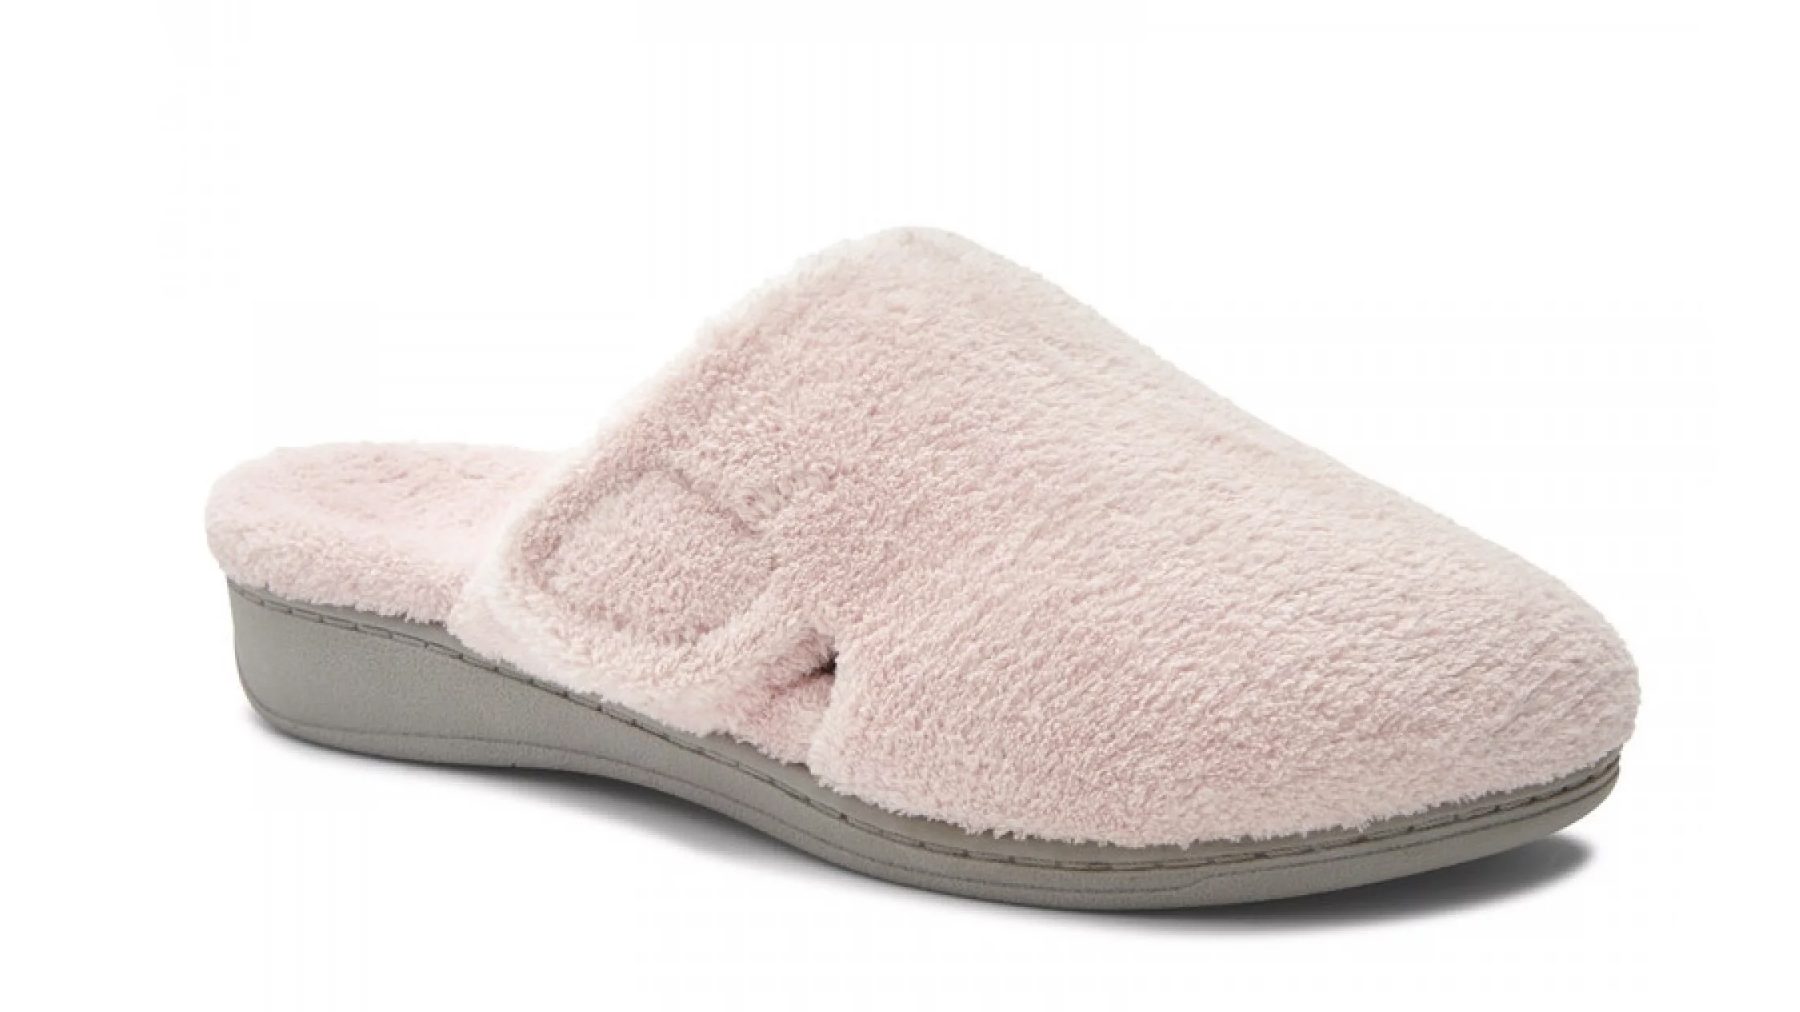 women's slippers for plantar fasciitis